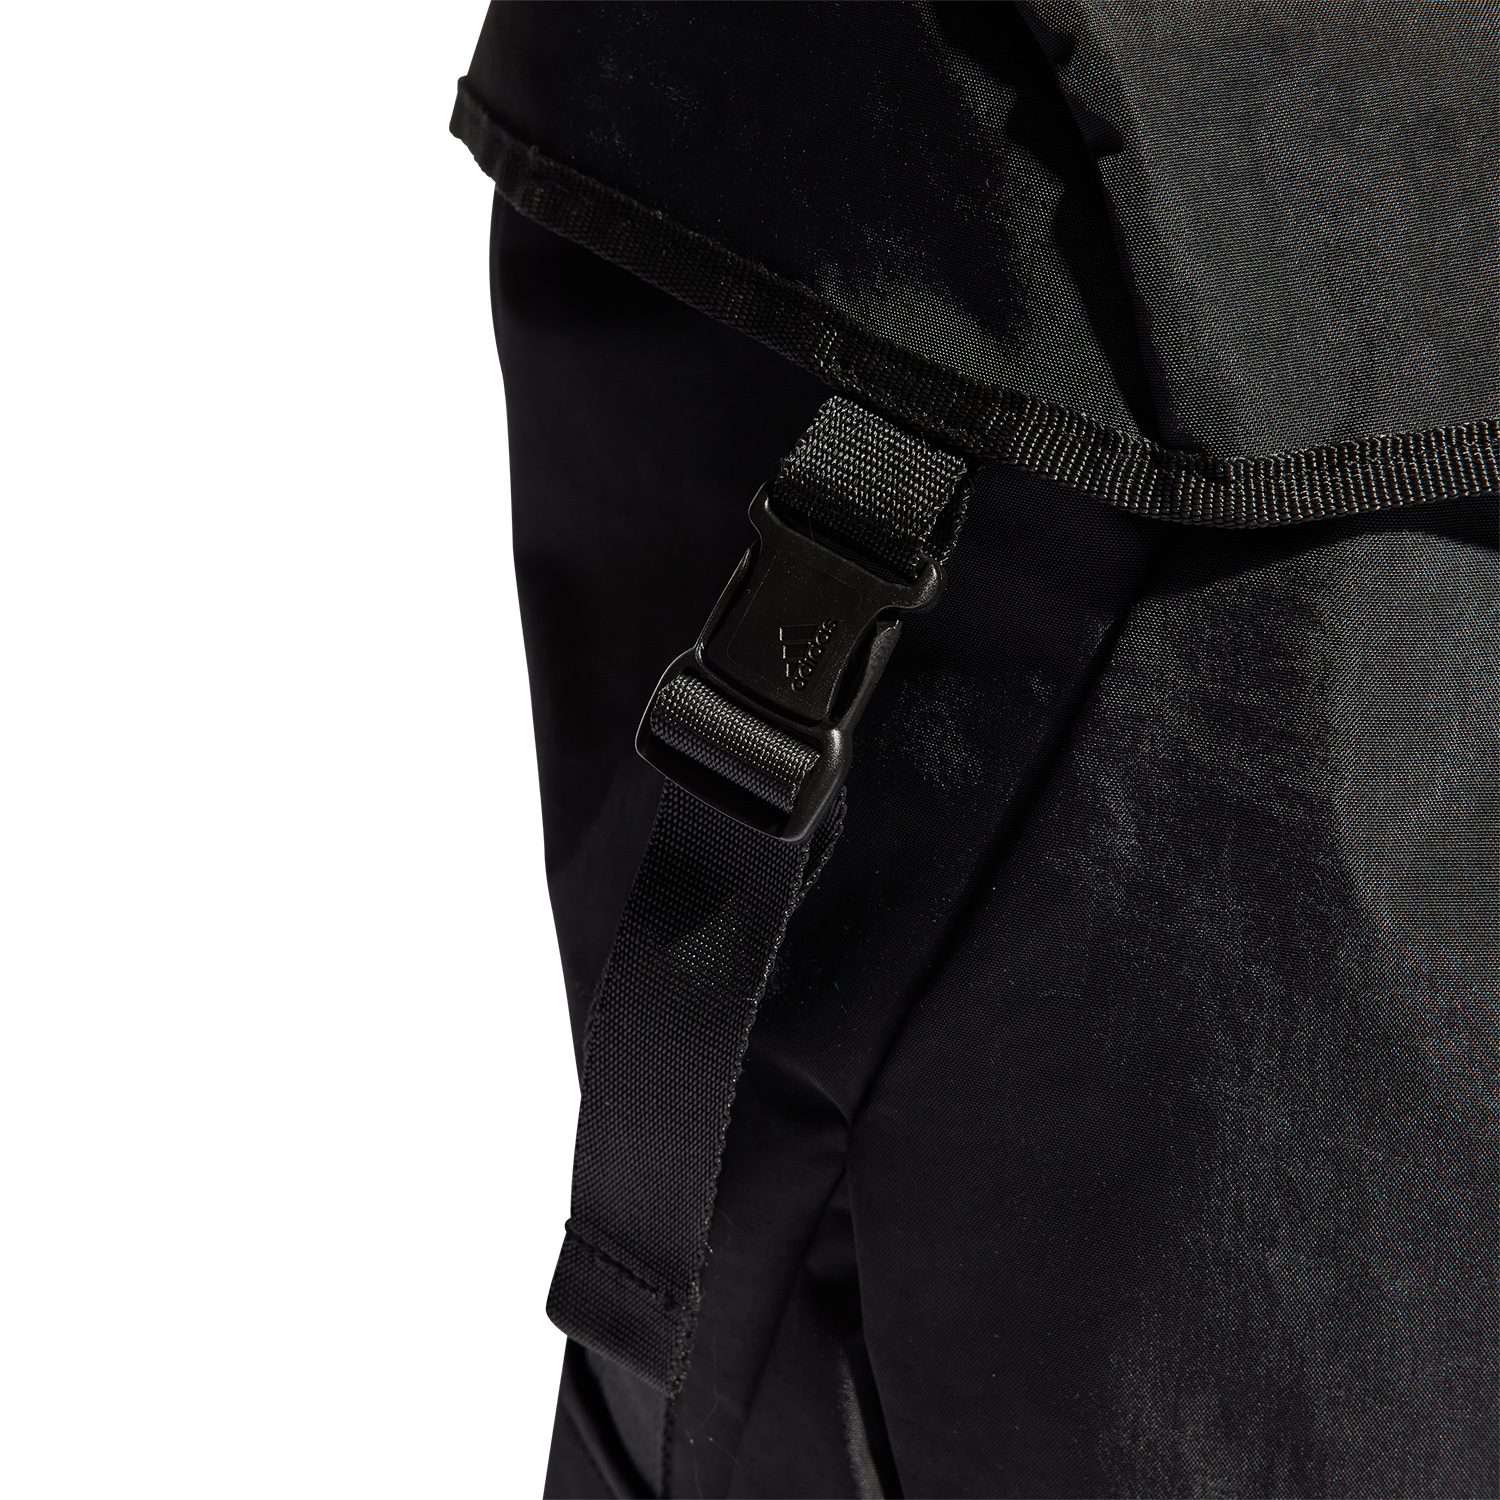 adidas 4ATHLTS Camper Backpack - Black